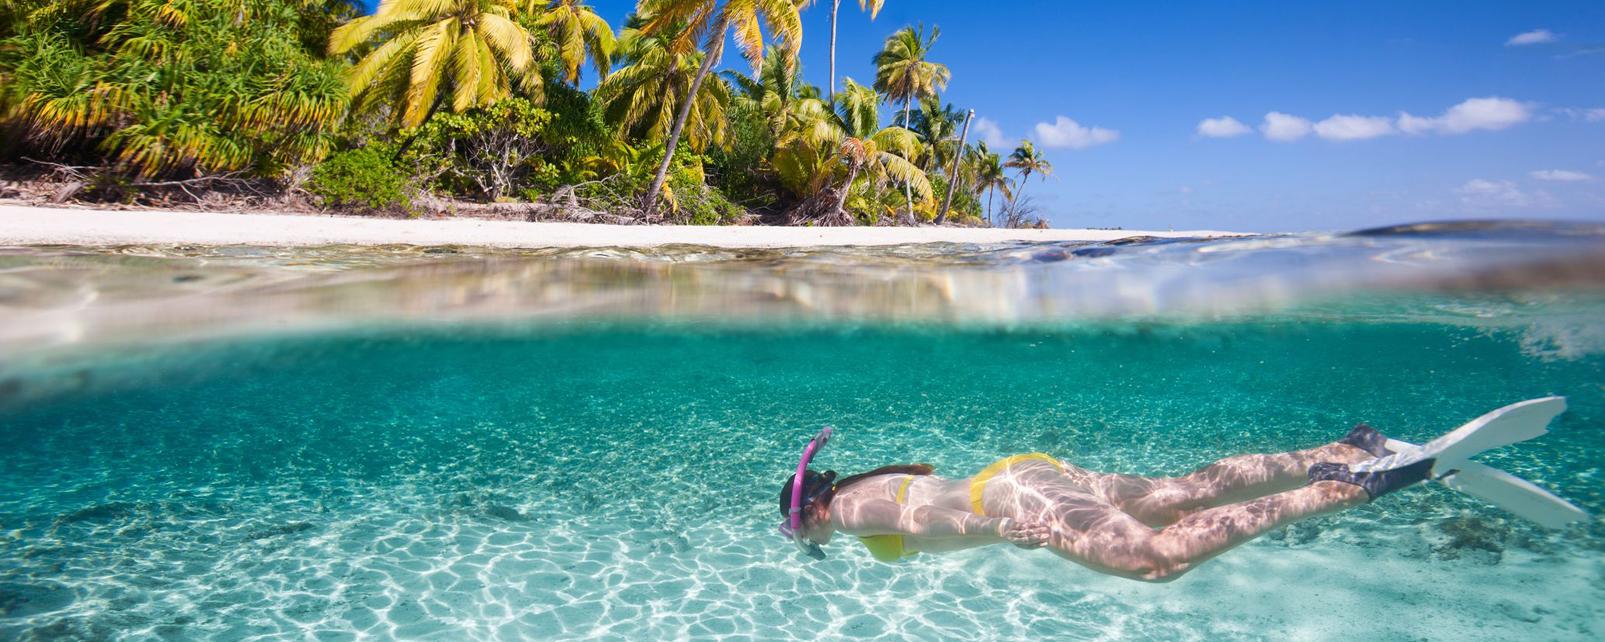 Bahamas, quando andare secondo Lonely Planet